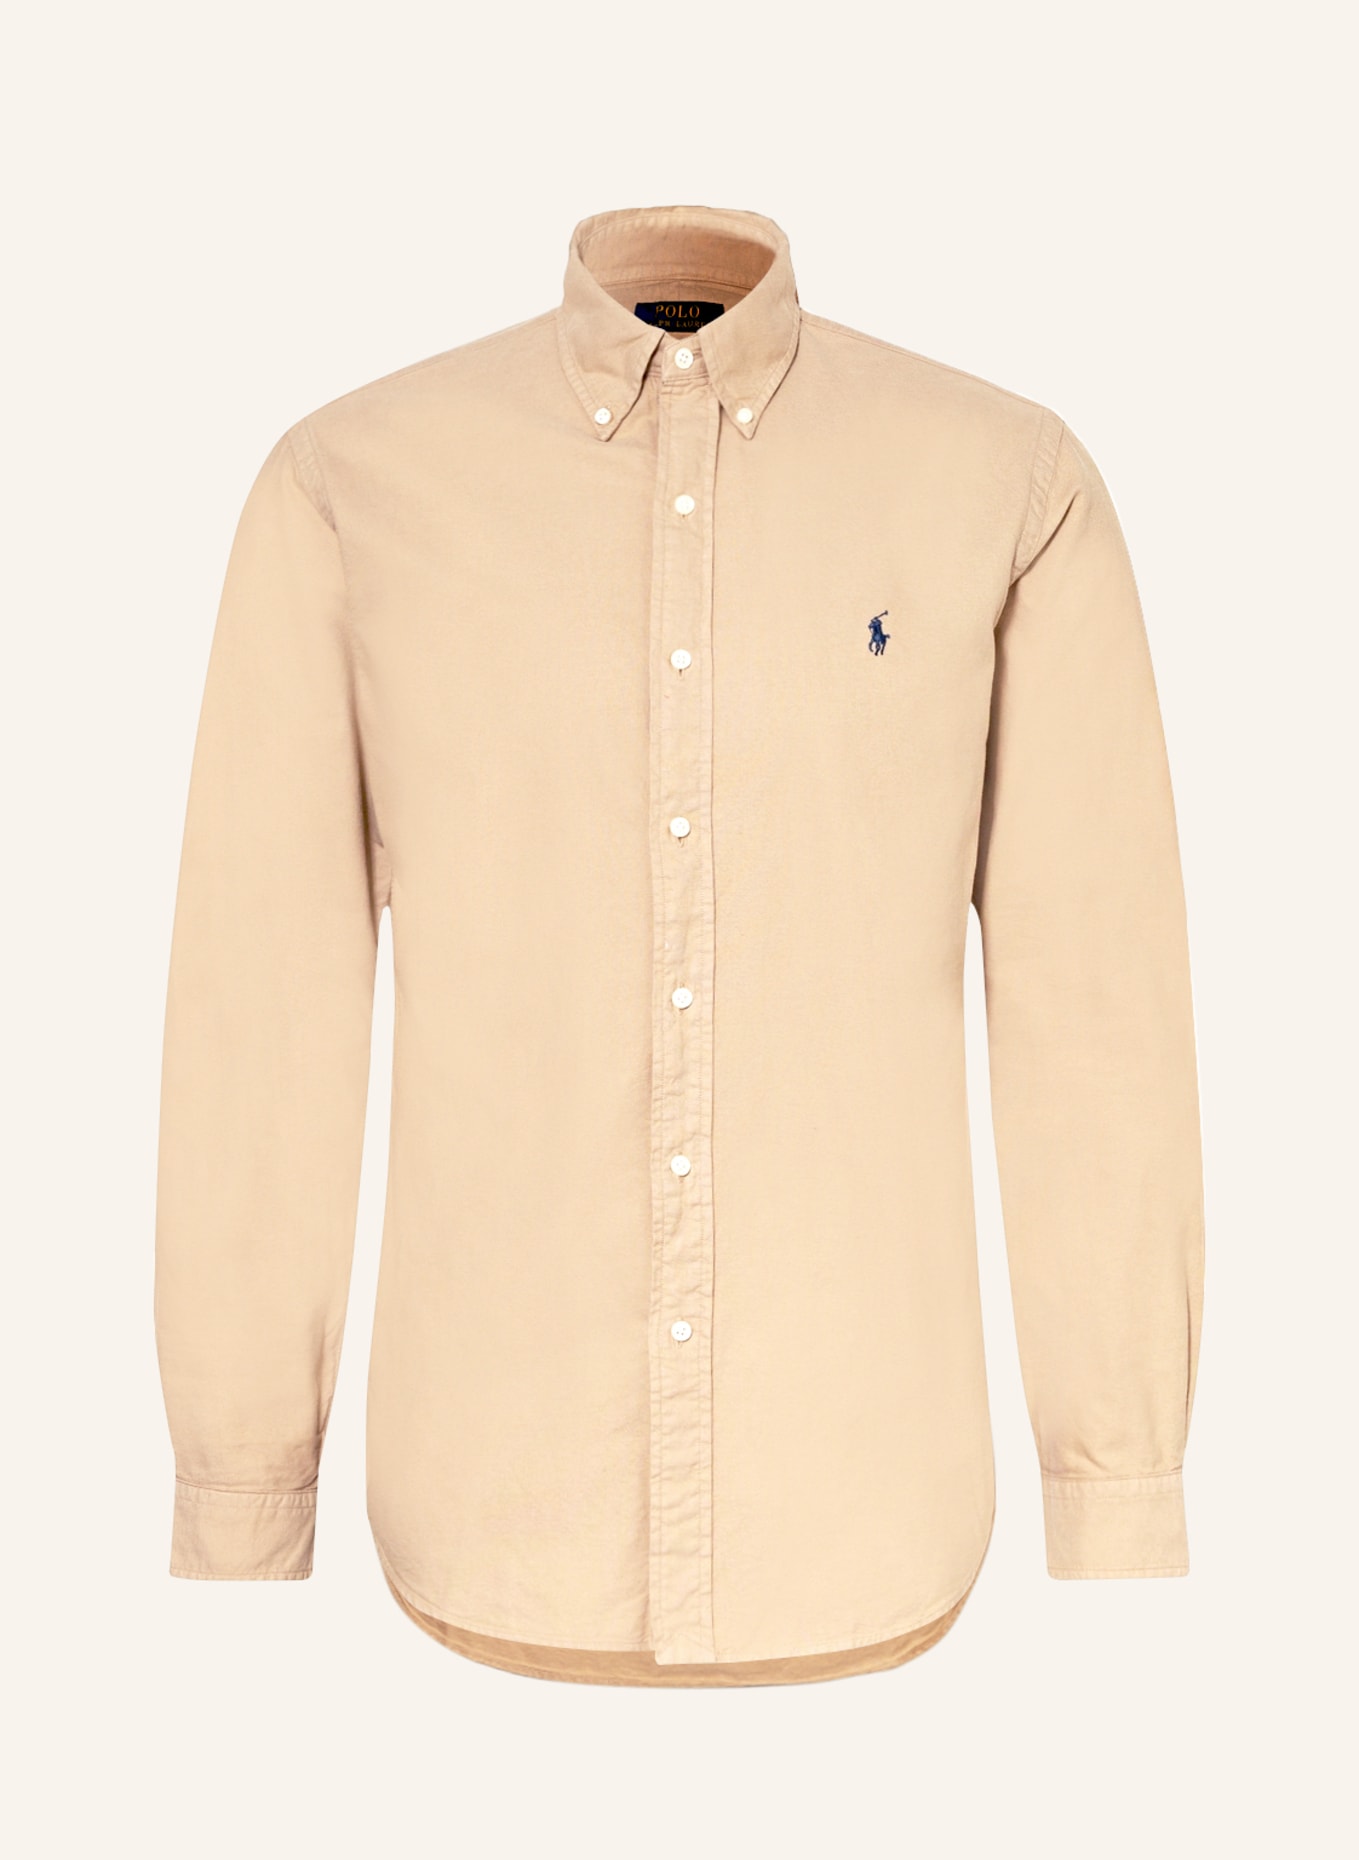 Рубашка POLO RALPH LAUREN Custom Fit, светло-коричневый футболка zara ribbed polo top светло коричневый